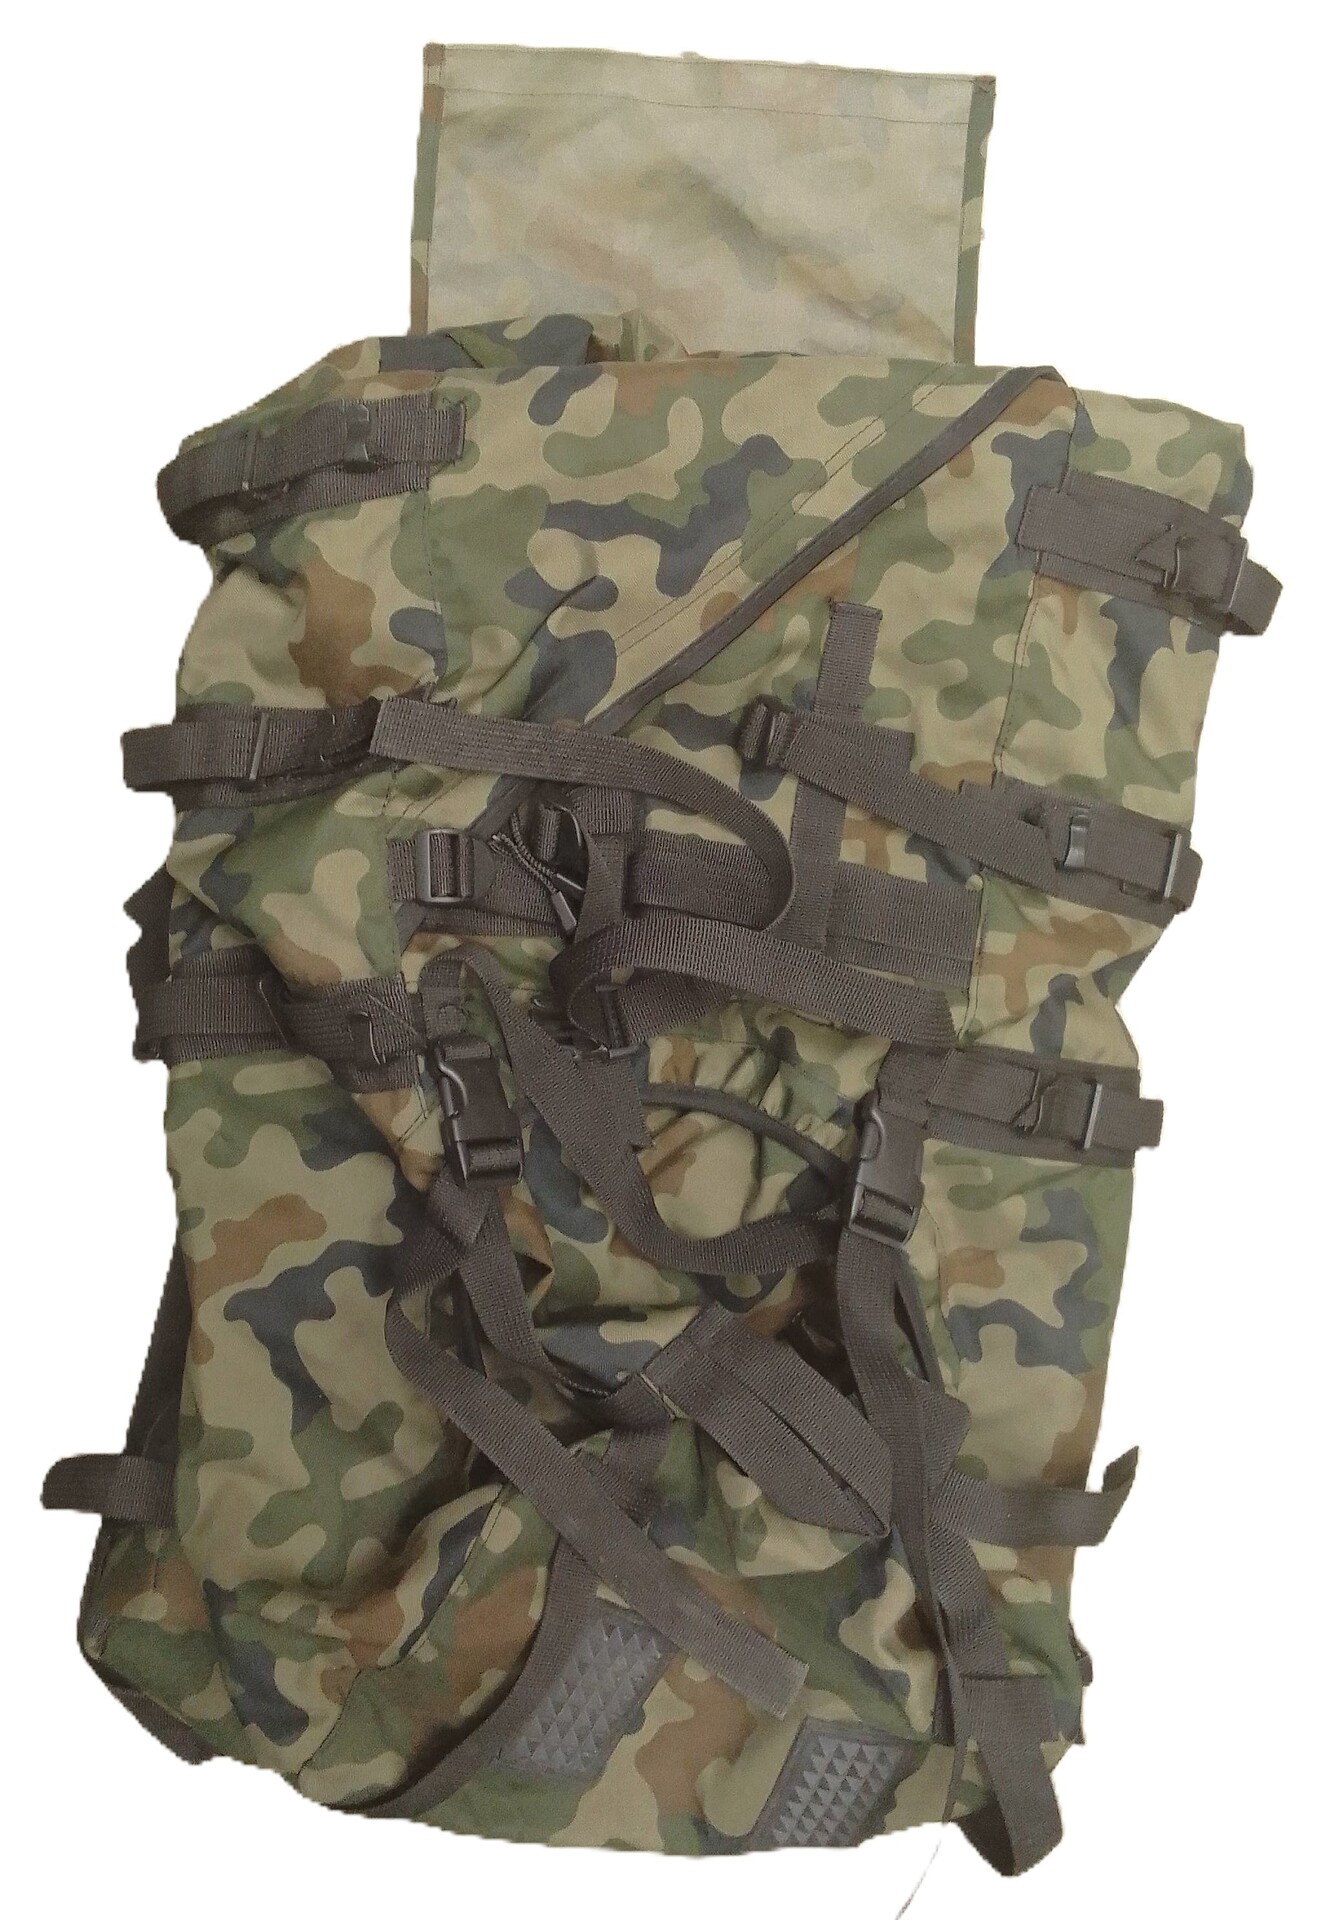 Plecak zasobnik piechoty górskiej 987/MON wz. 93 - demobil